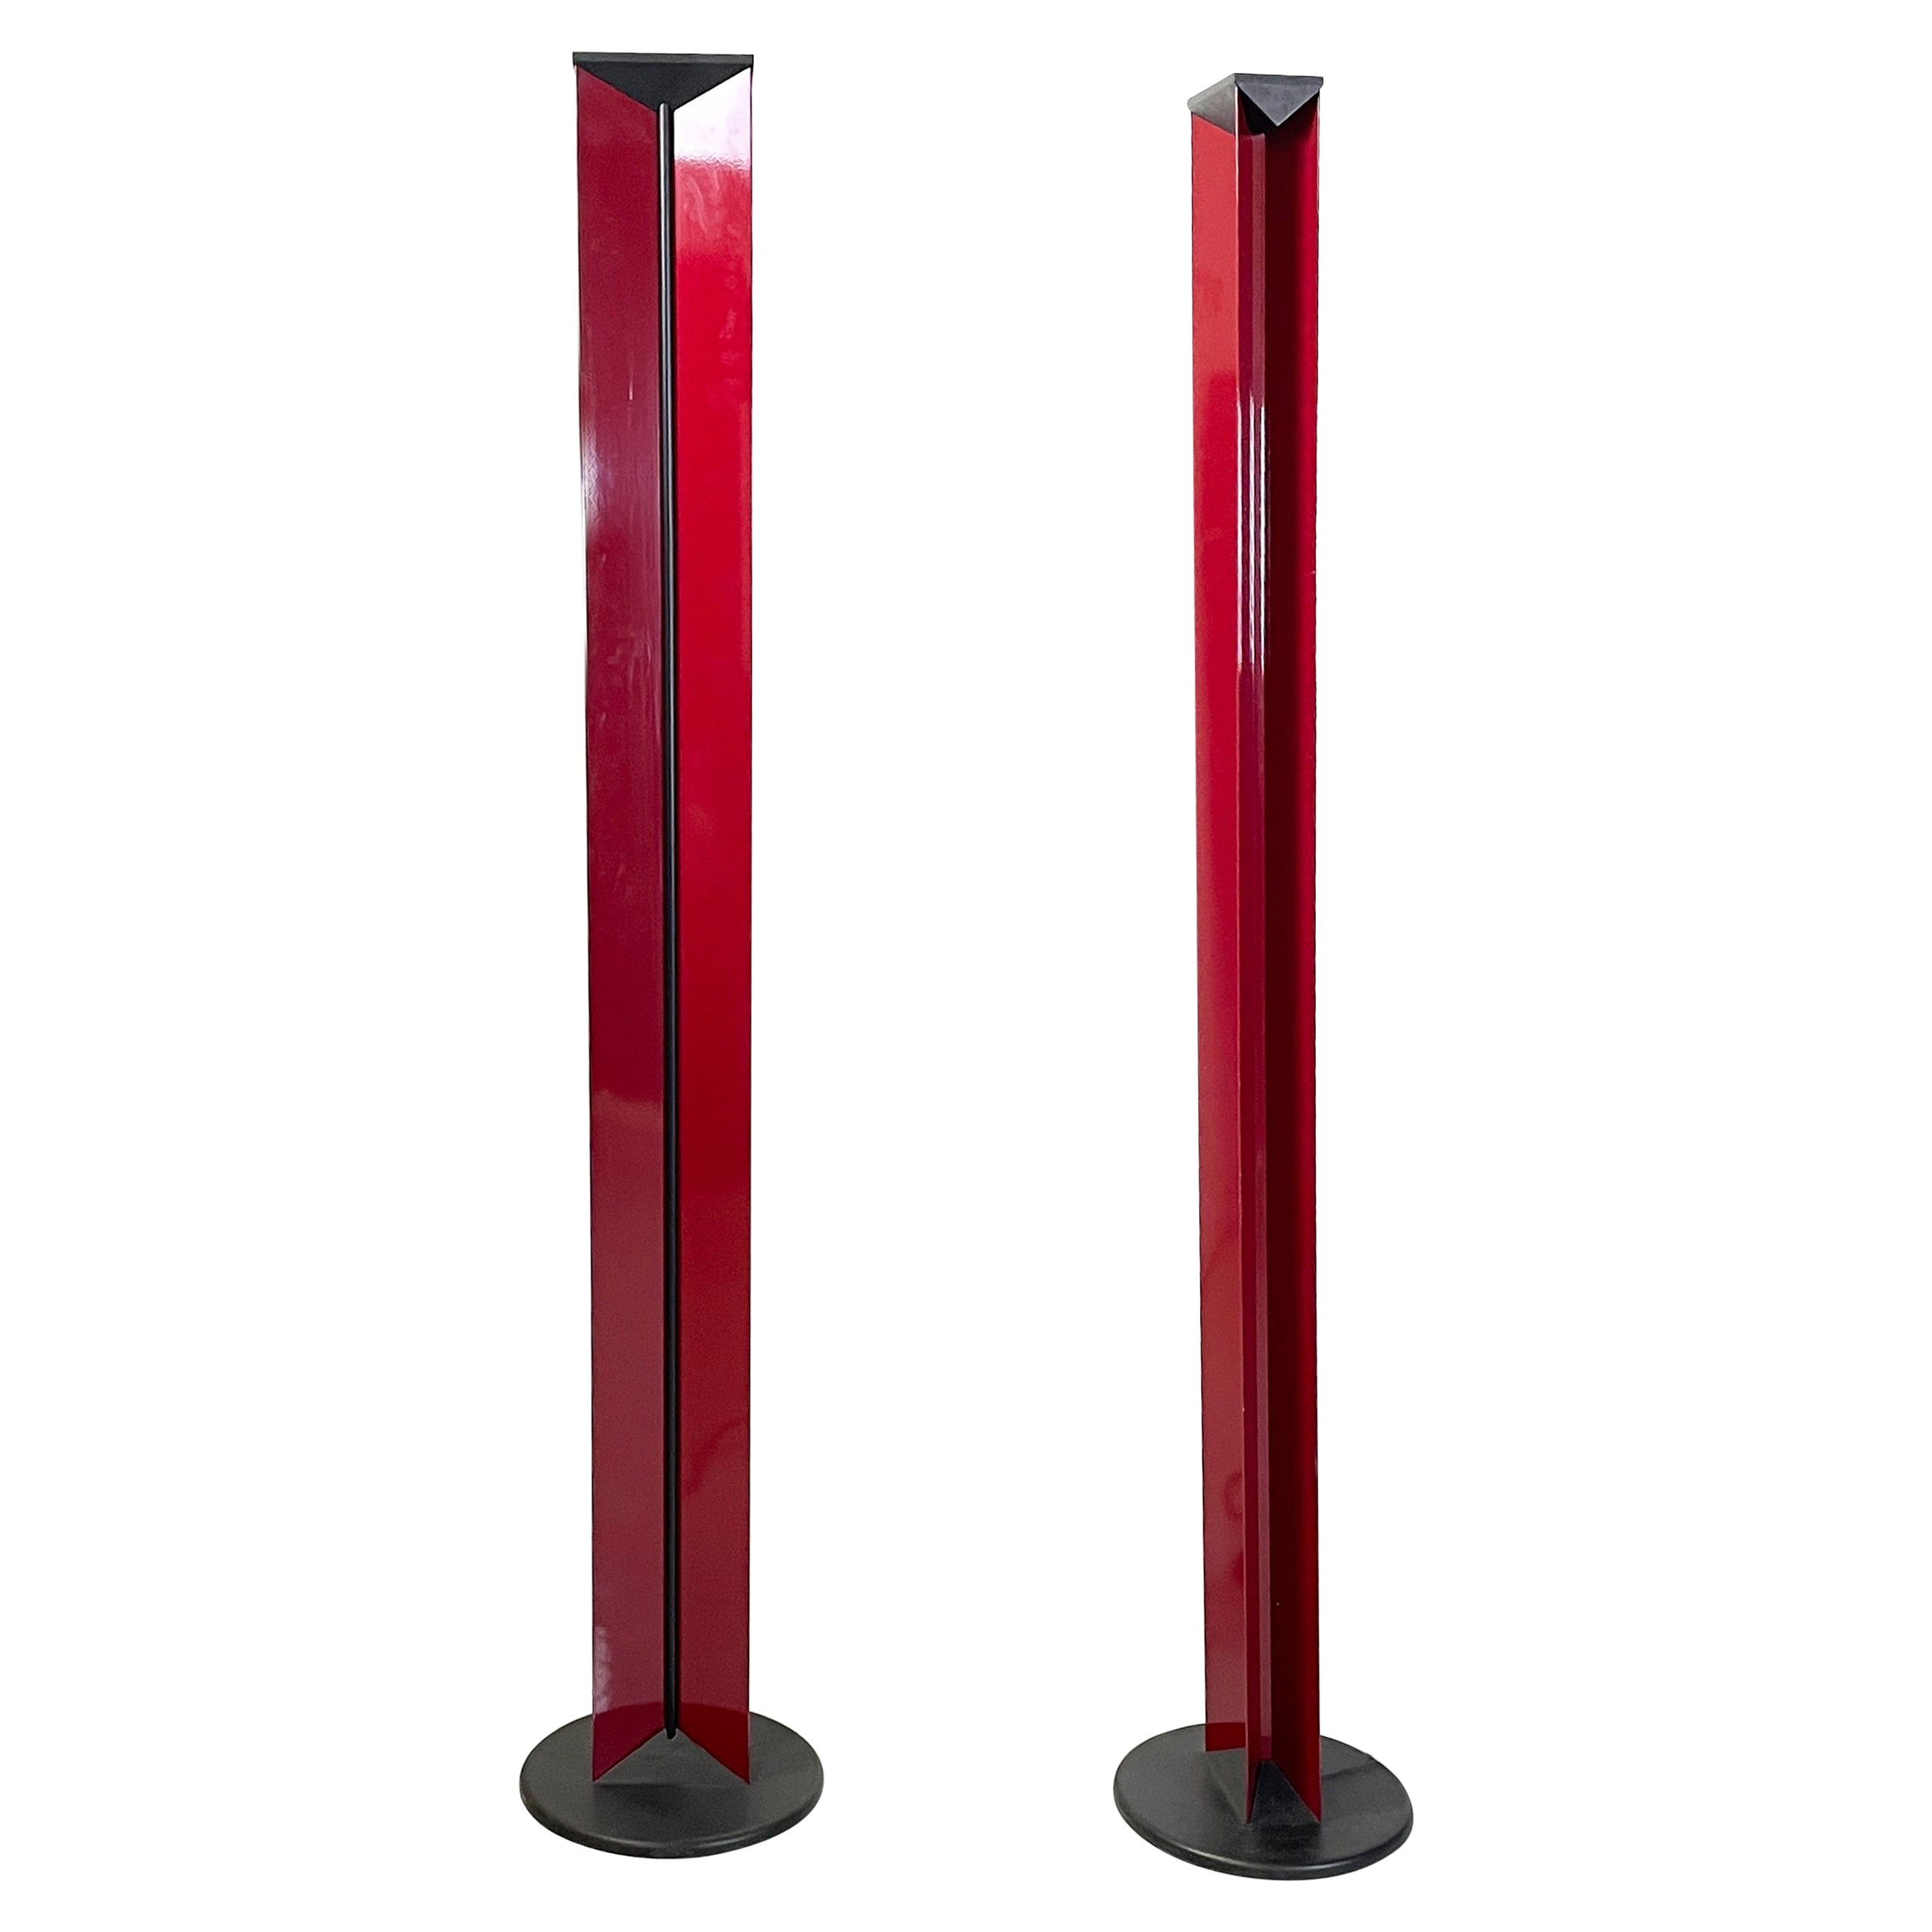 Lampadaires modernes italiens en métal rouge et plastique noir par The Moderns, années 1990